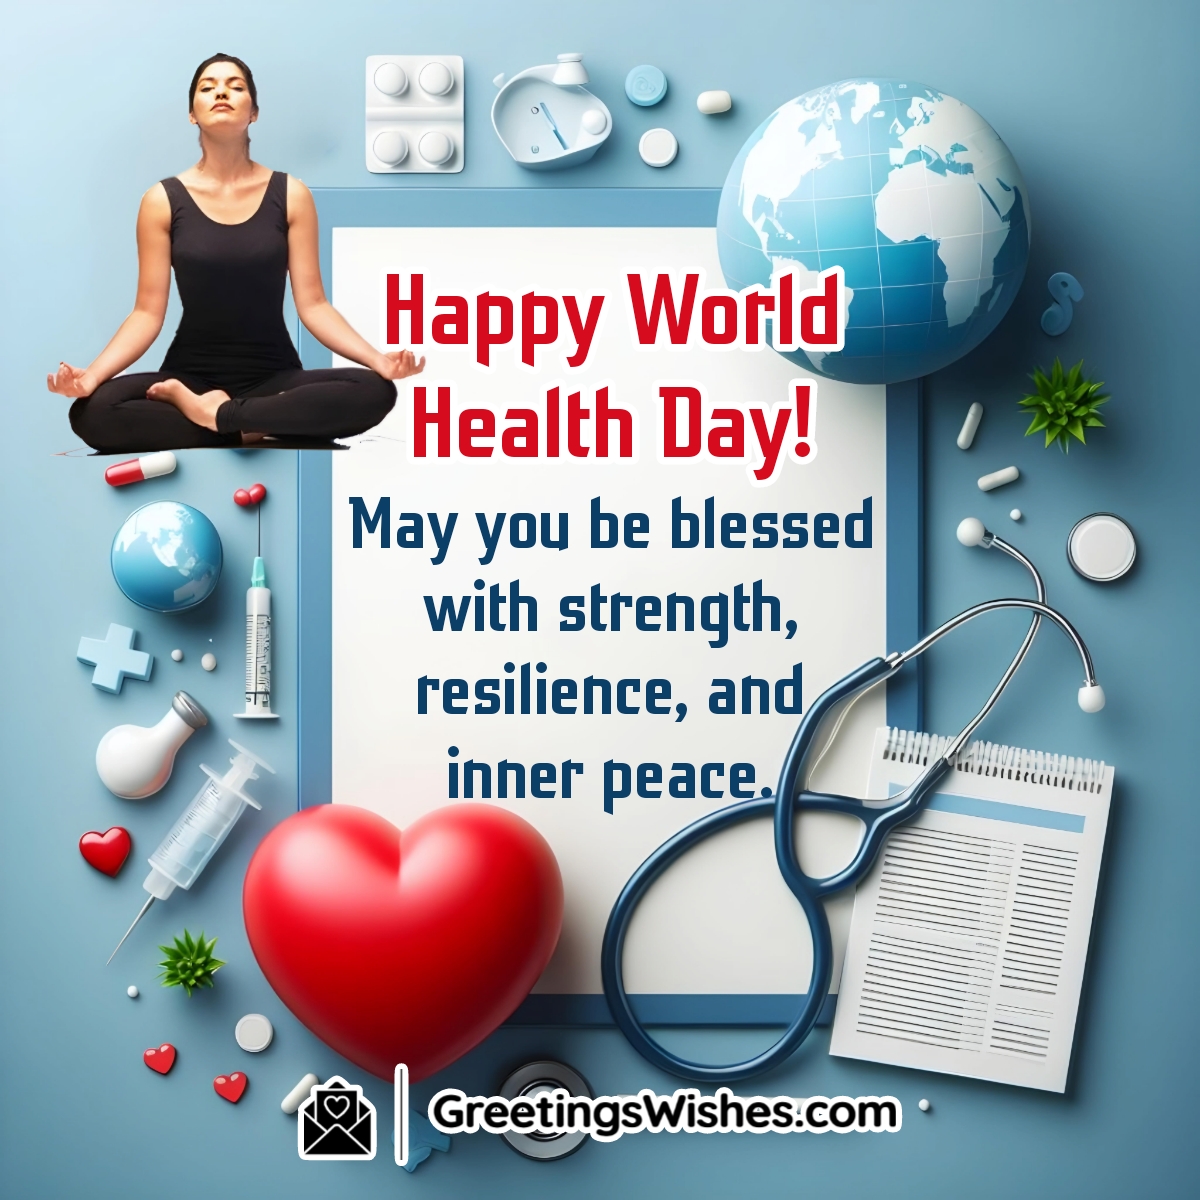 Happy World Health Day Wish Image